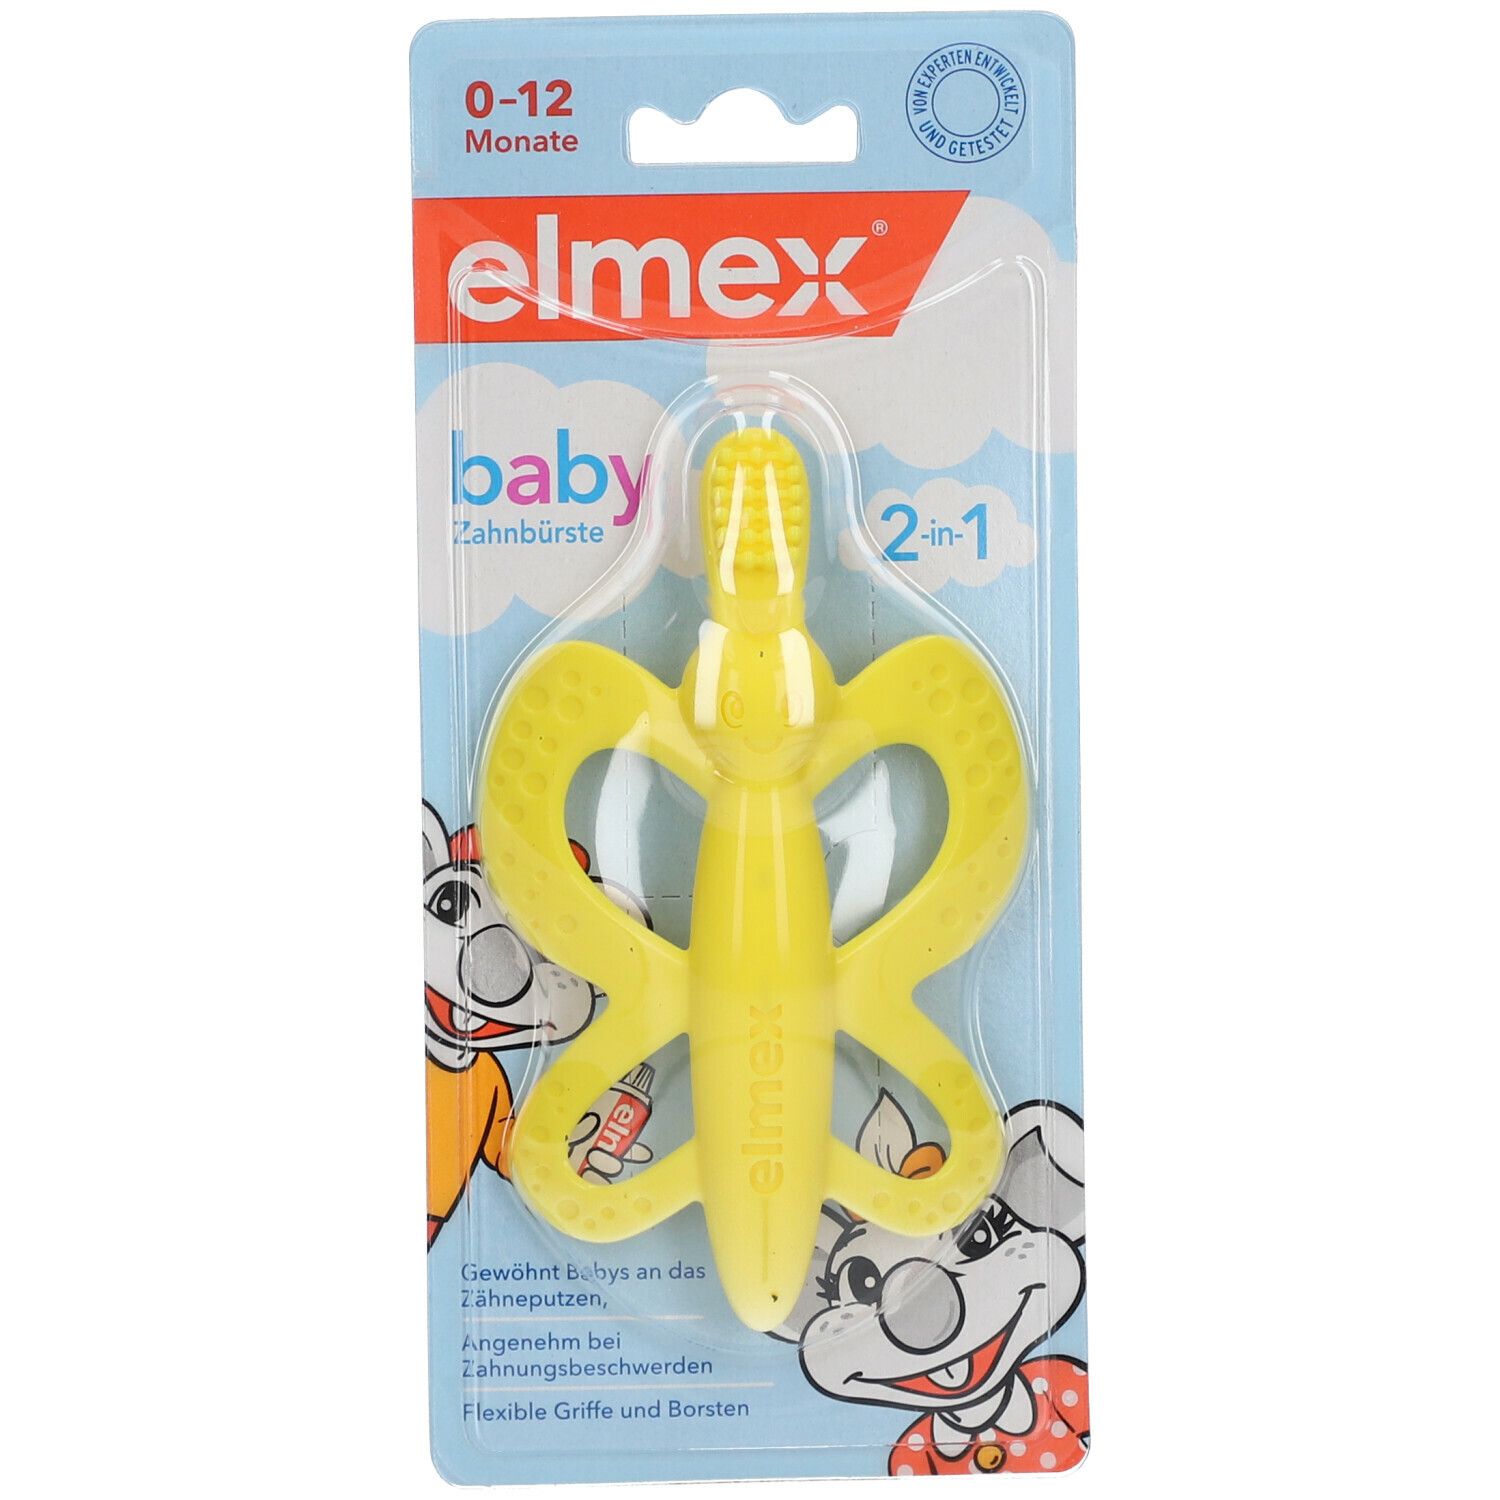 elmex® baby Zahnbürste 2-in-1